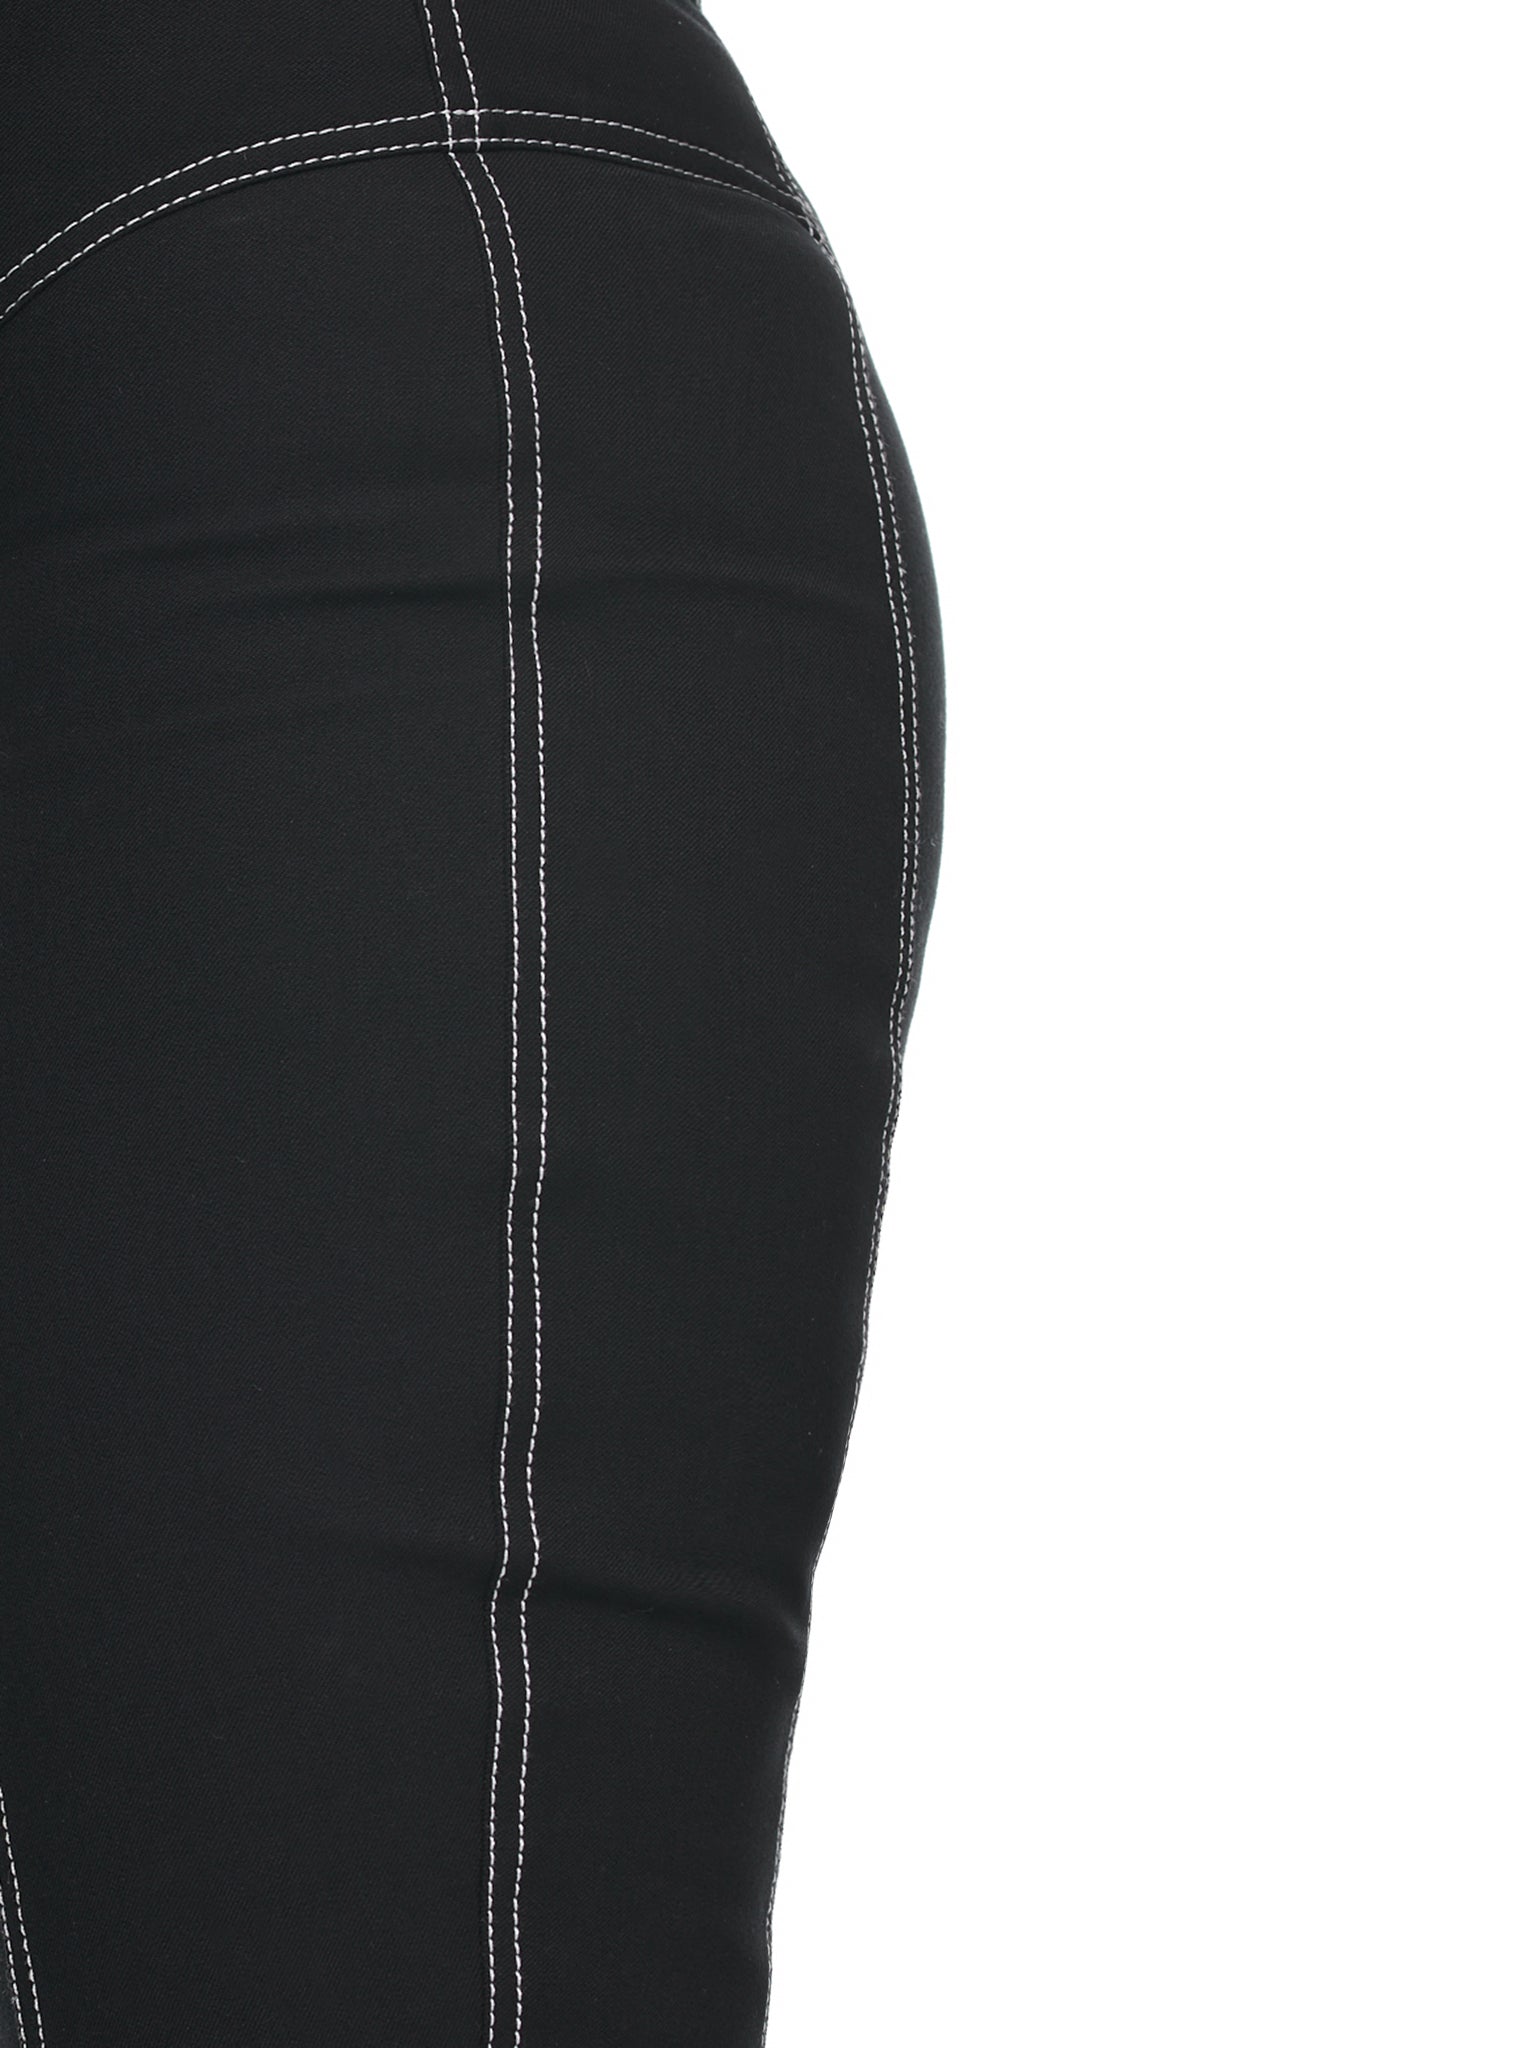 Underline Pants (MSS22UDLCLG010-BLACK)